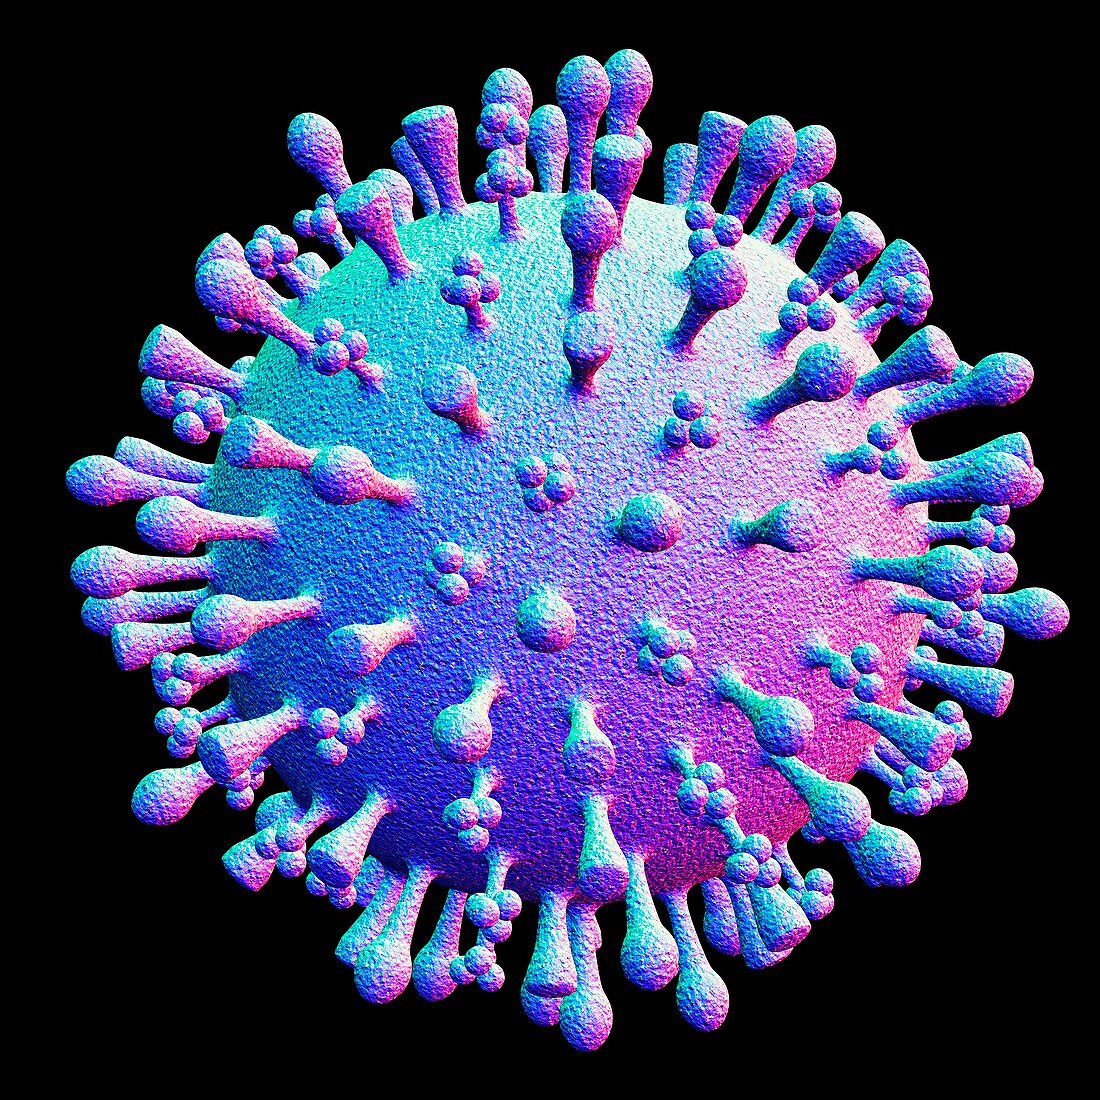 Avian flu virus particle,artwork